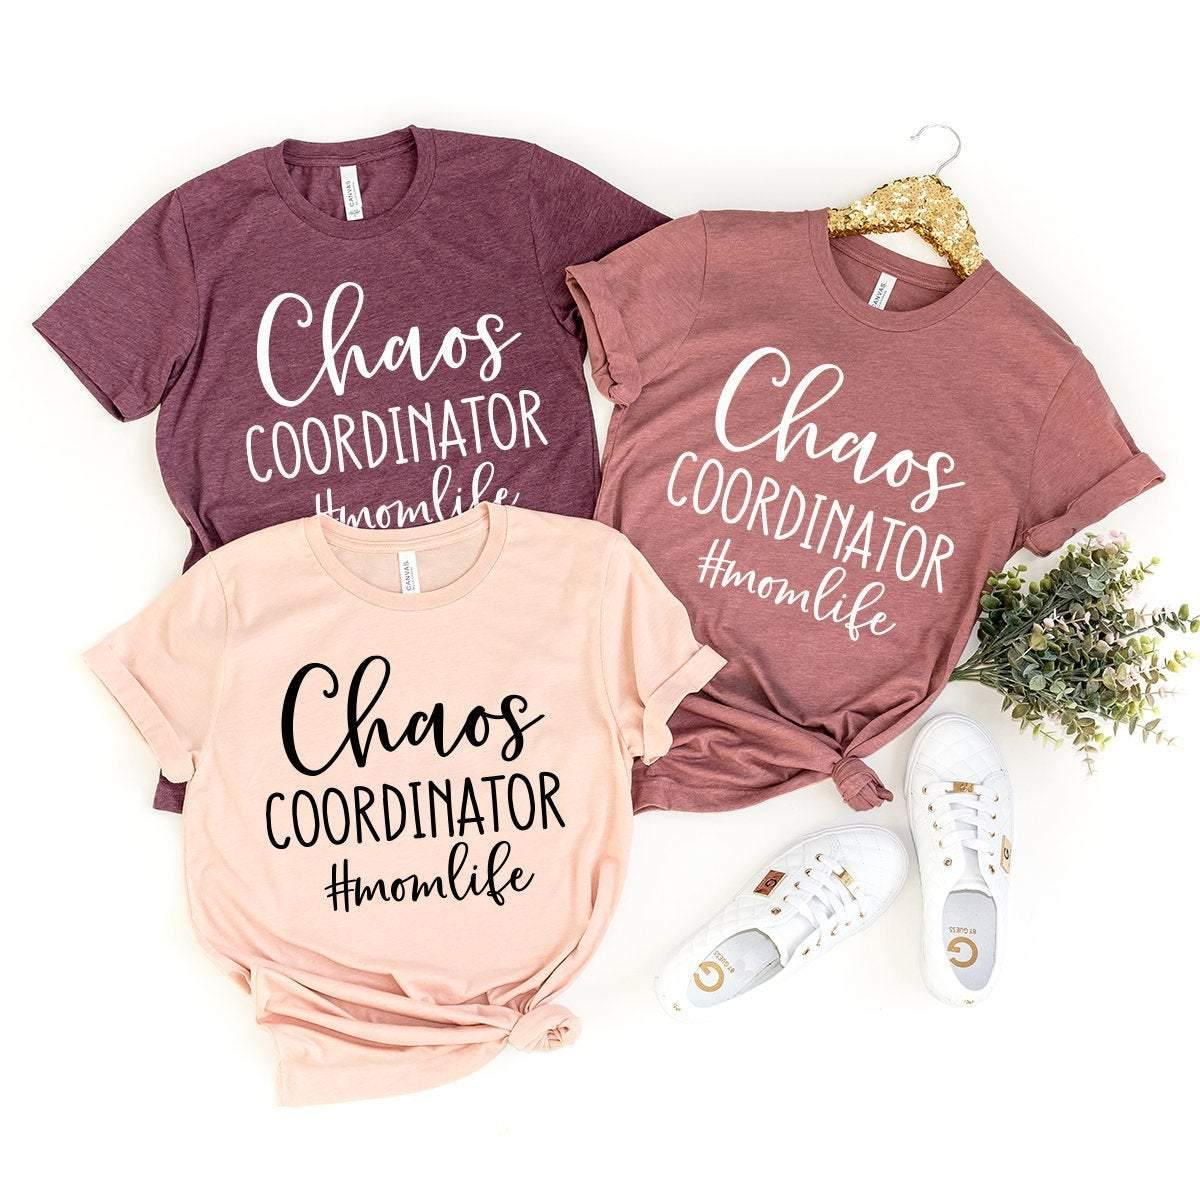 Chaos Coordinator Shirt, Mom Life Shirt, Mom Birthday Gift, Motherhood Shirt, Coordinator Mom Tee, Funny Mom T-Shirt, Mom Shirts With Saying - Fastdeliverytees.com